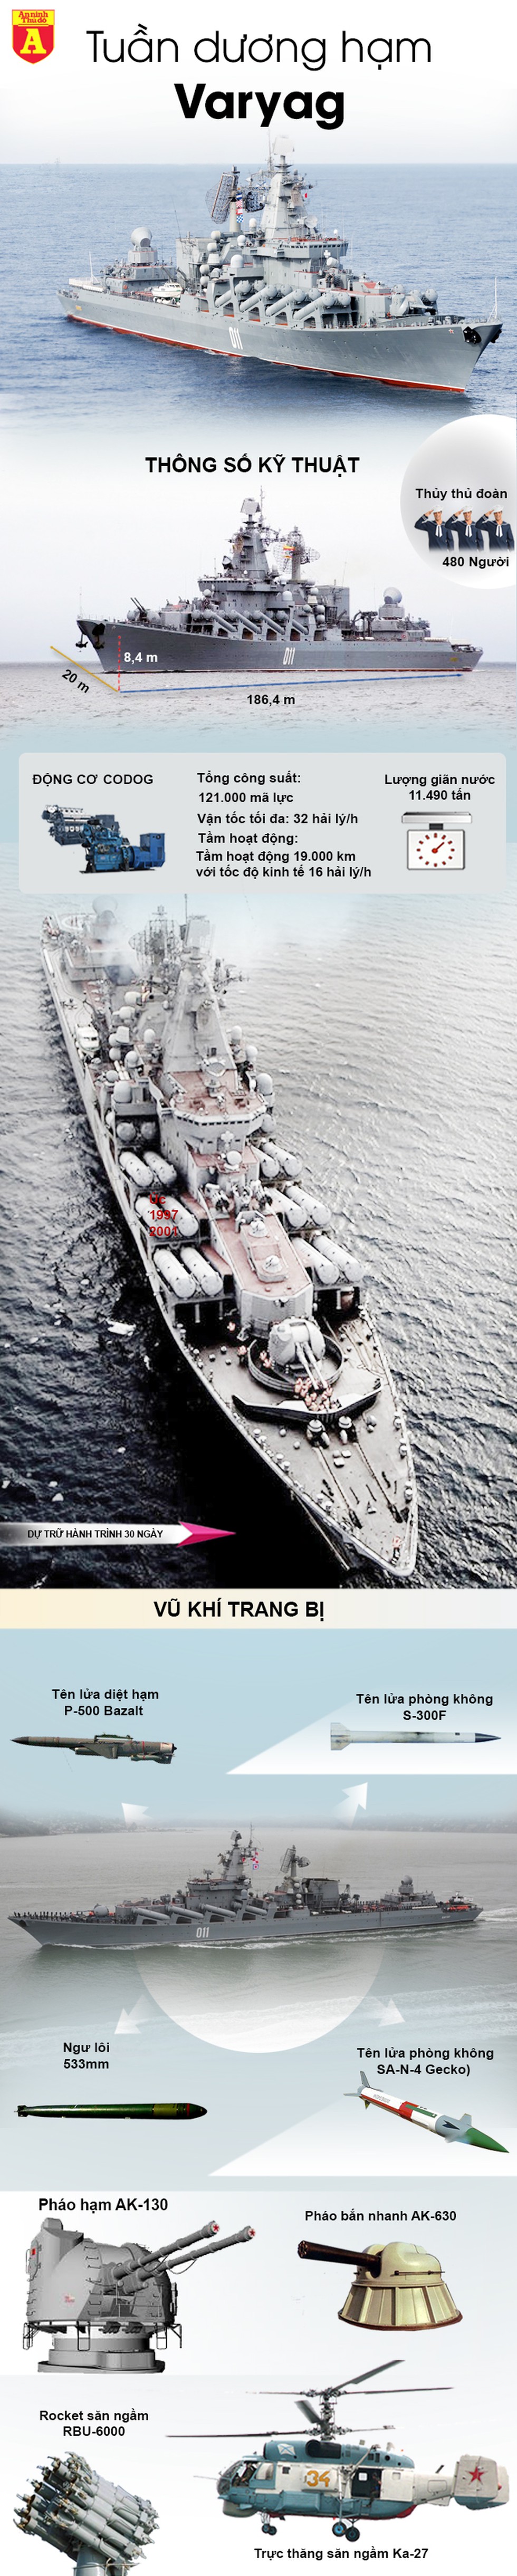 [Infographics] Tuần dương hạm Varyag cực mạnh của Nga tới Biển Đông - Ảnh 1